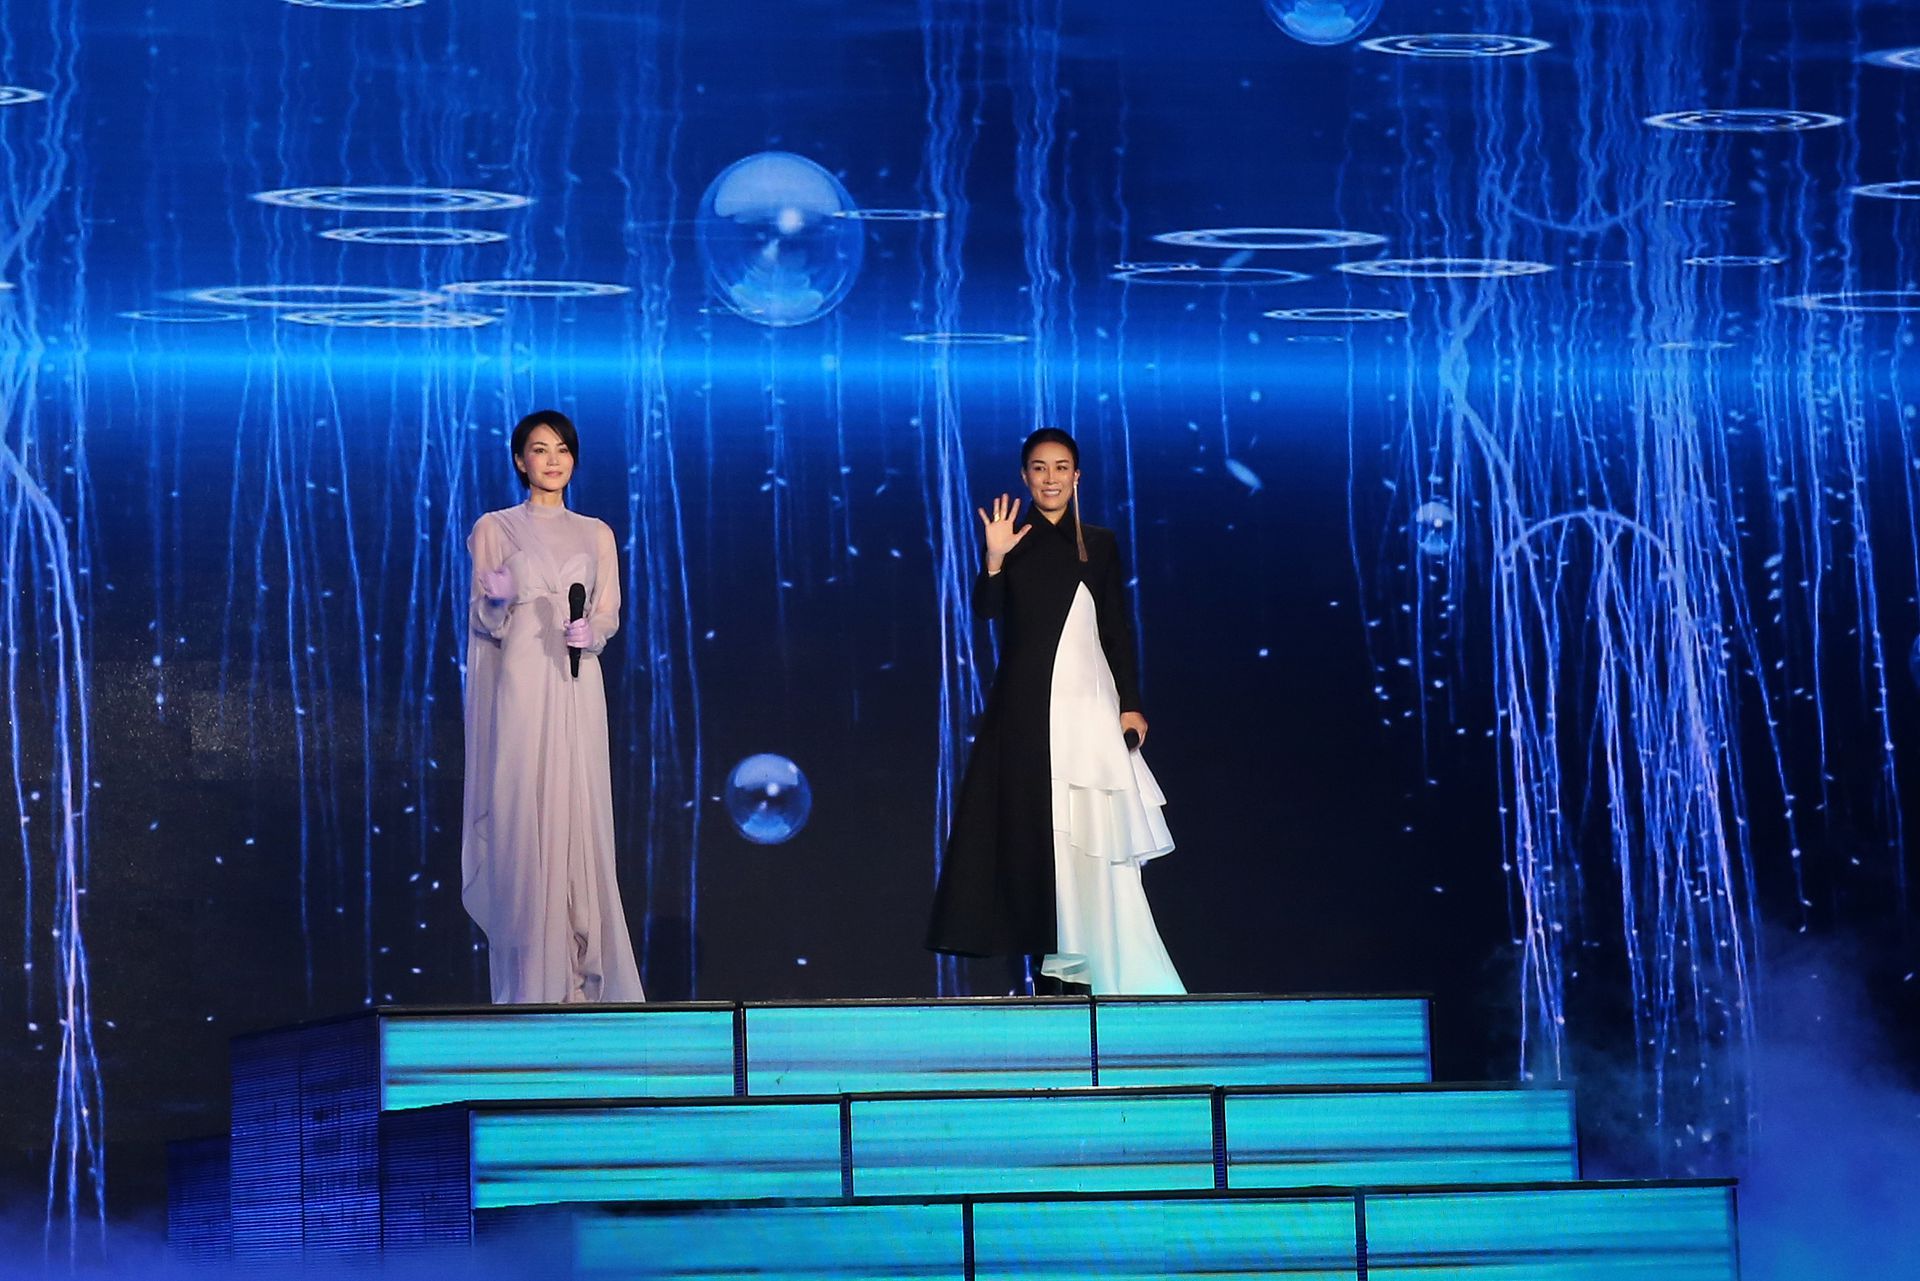 中国歌手王菲（左）、那英曾在1998年央视春晚上演唱的《相约1998》称为中国民众印象深刻的歌曲。图为2018年两人合体再登春晚合唱《岁月》。（VCG）